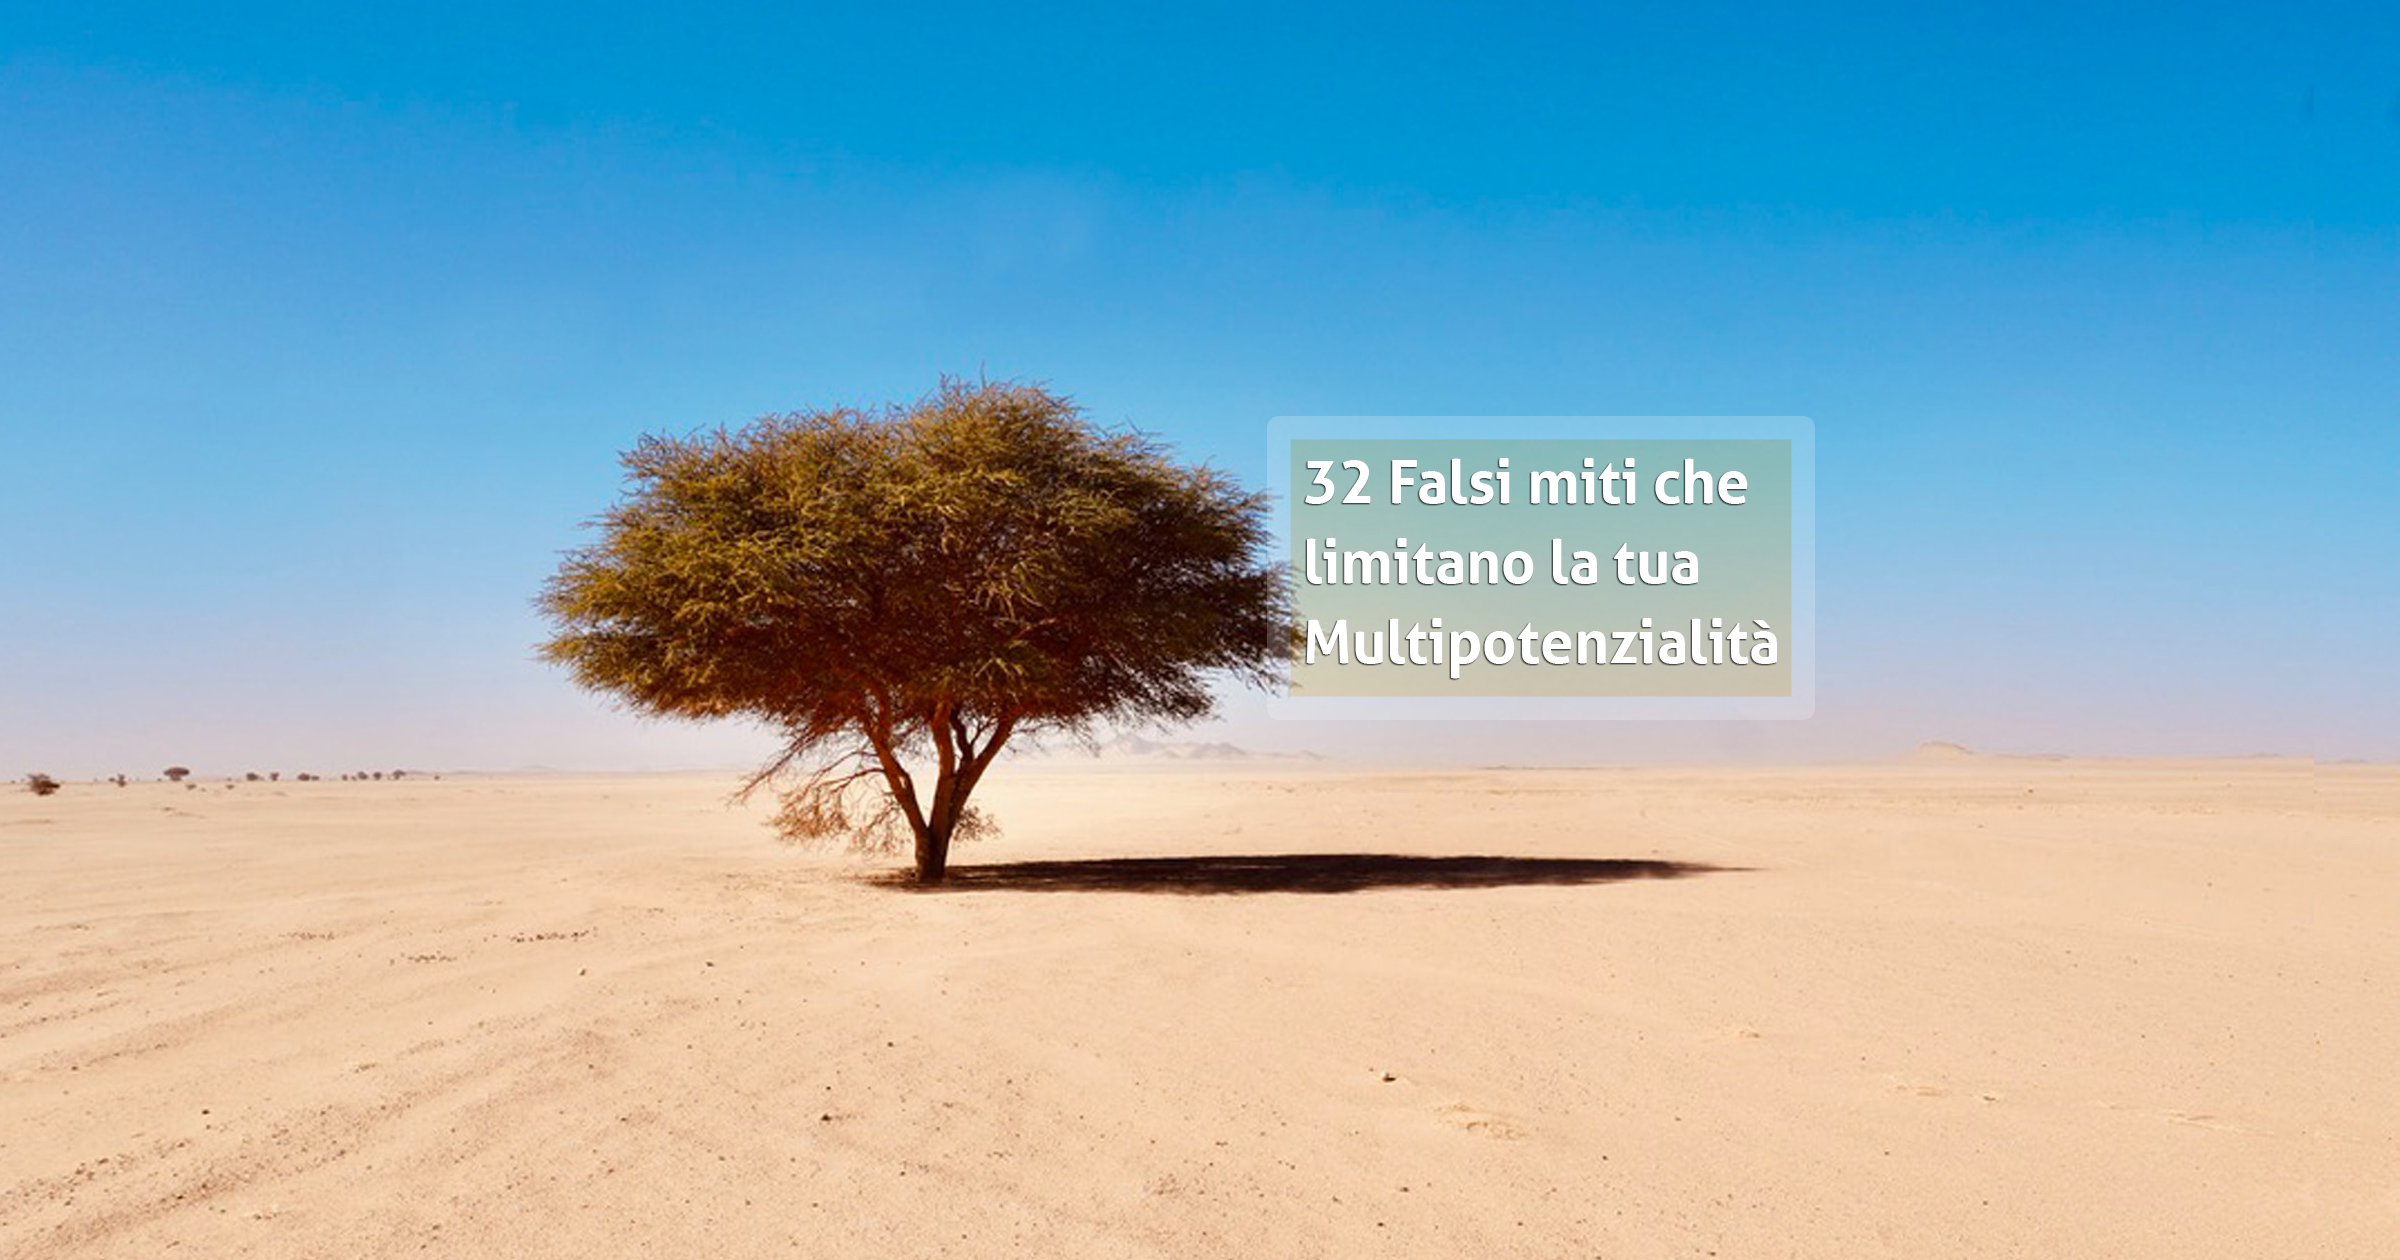 32 Falsi miti che limitano la tua multipotenzialità